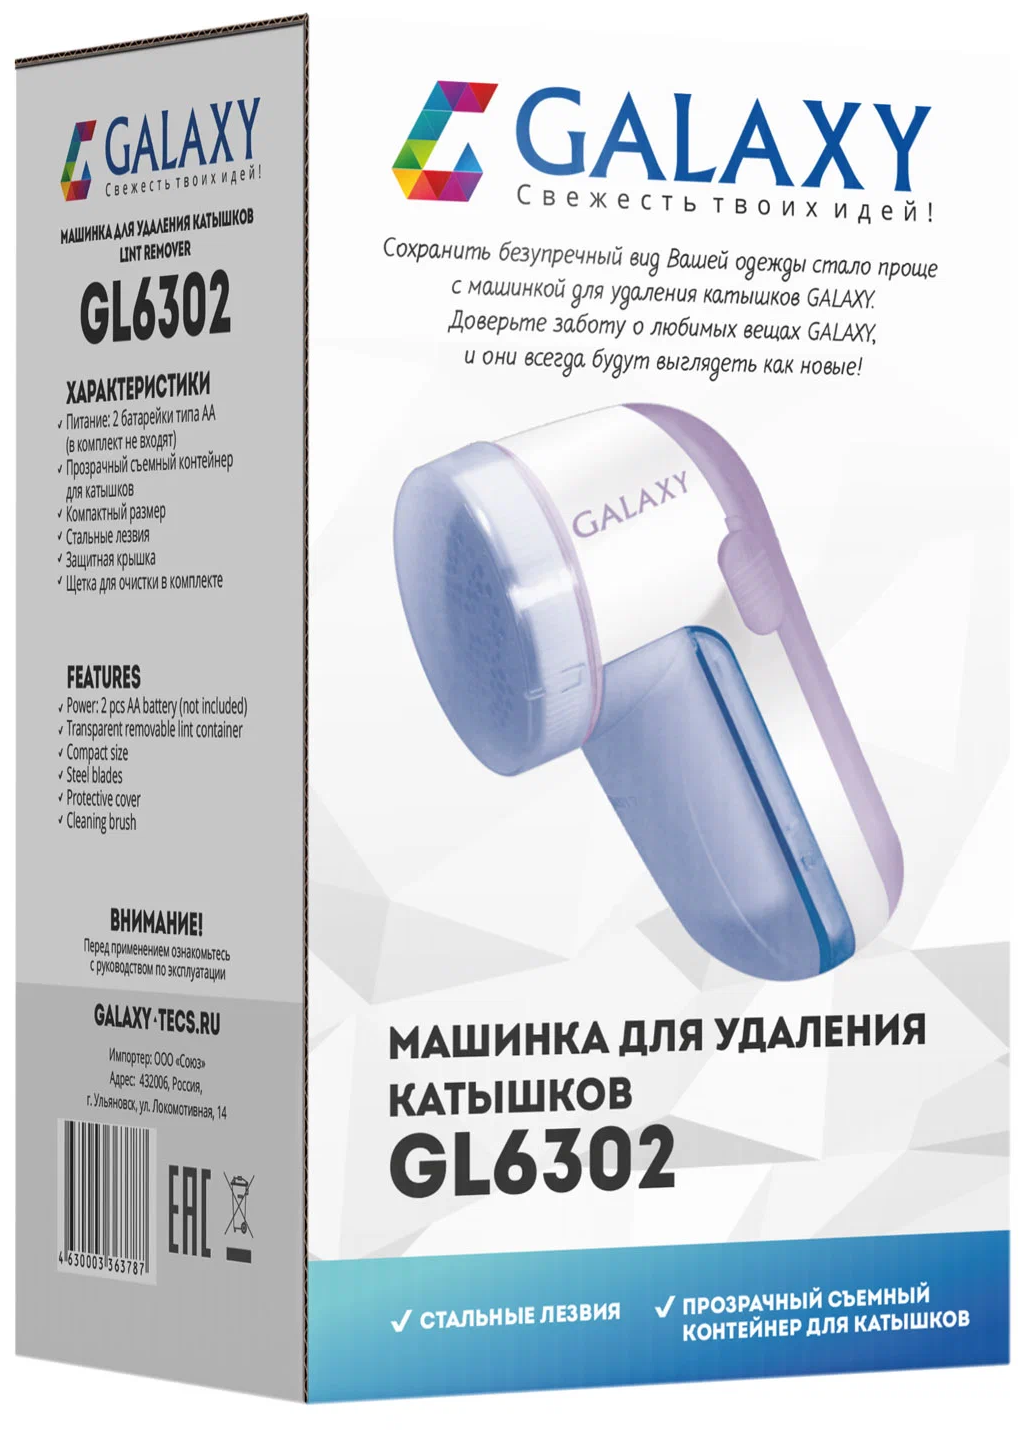 Машинка GALAXY LINE GL6302 — купить по выгодной цене на Яндекс Маркете